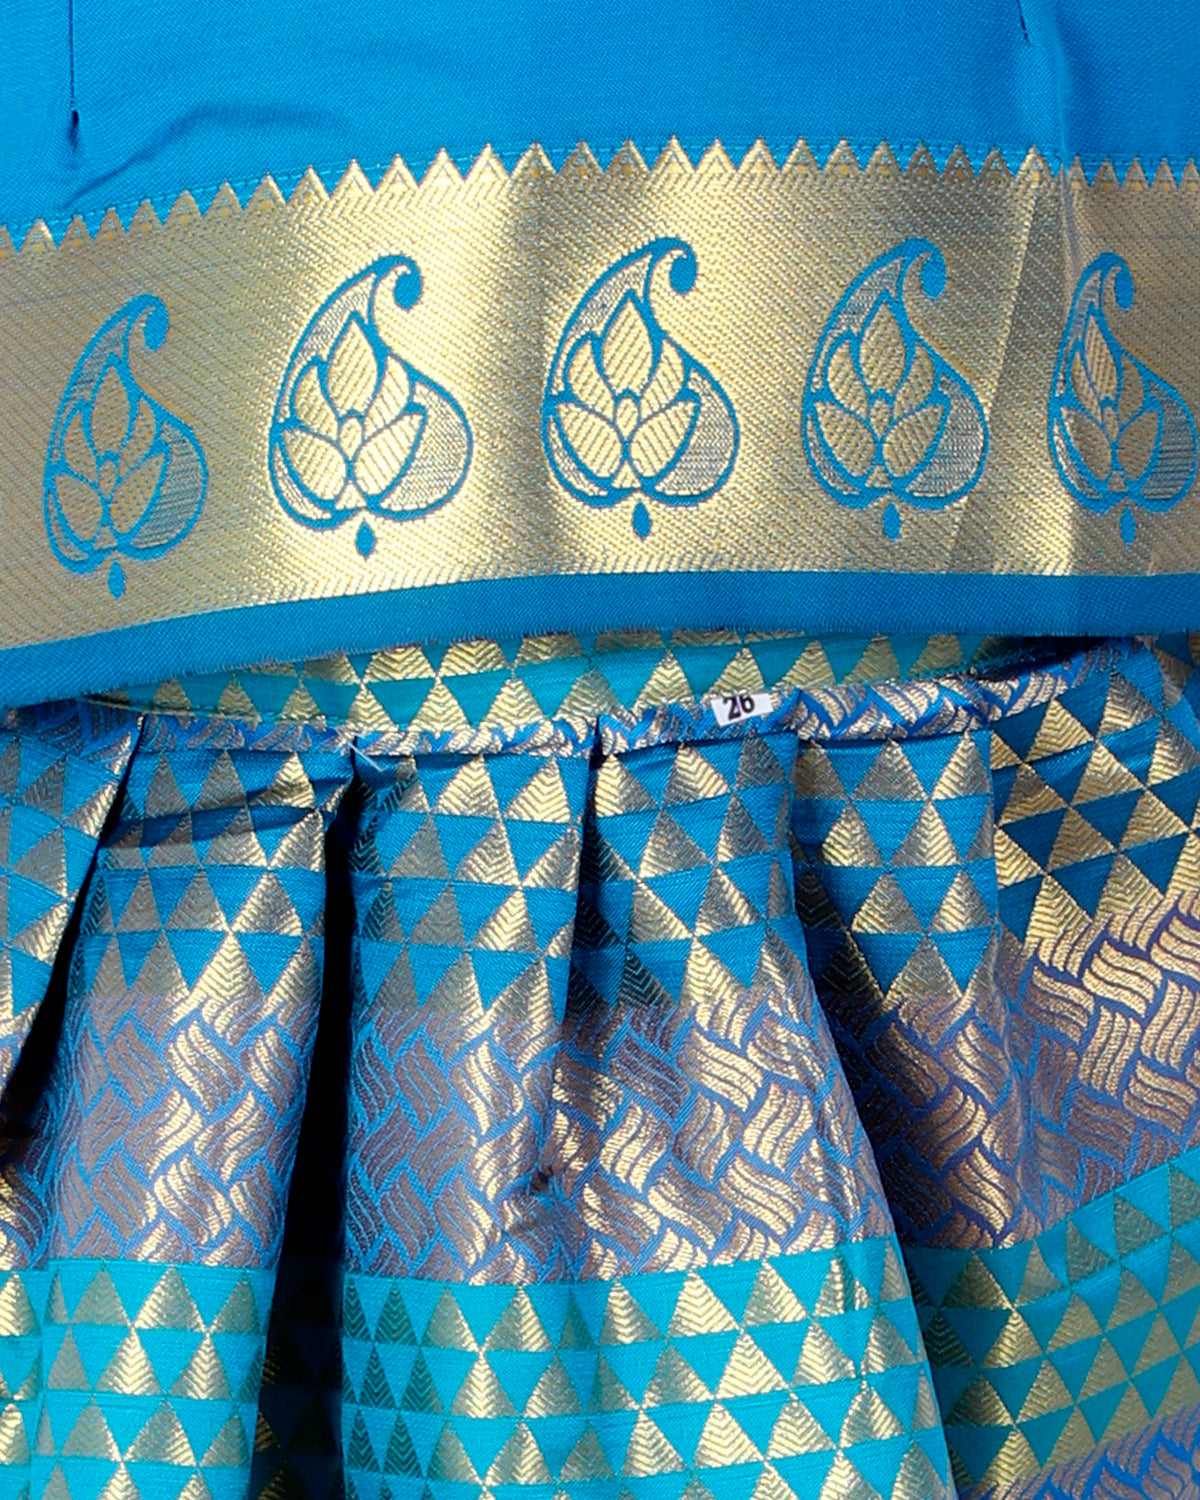 BownBee South Indian Ethnic Pavda Pattu Lehenga With Short Sleeves Choli - Blue